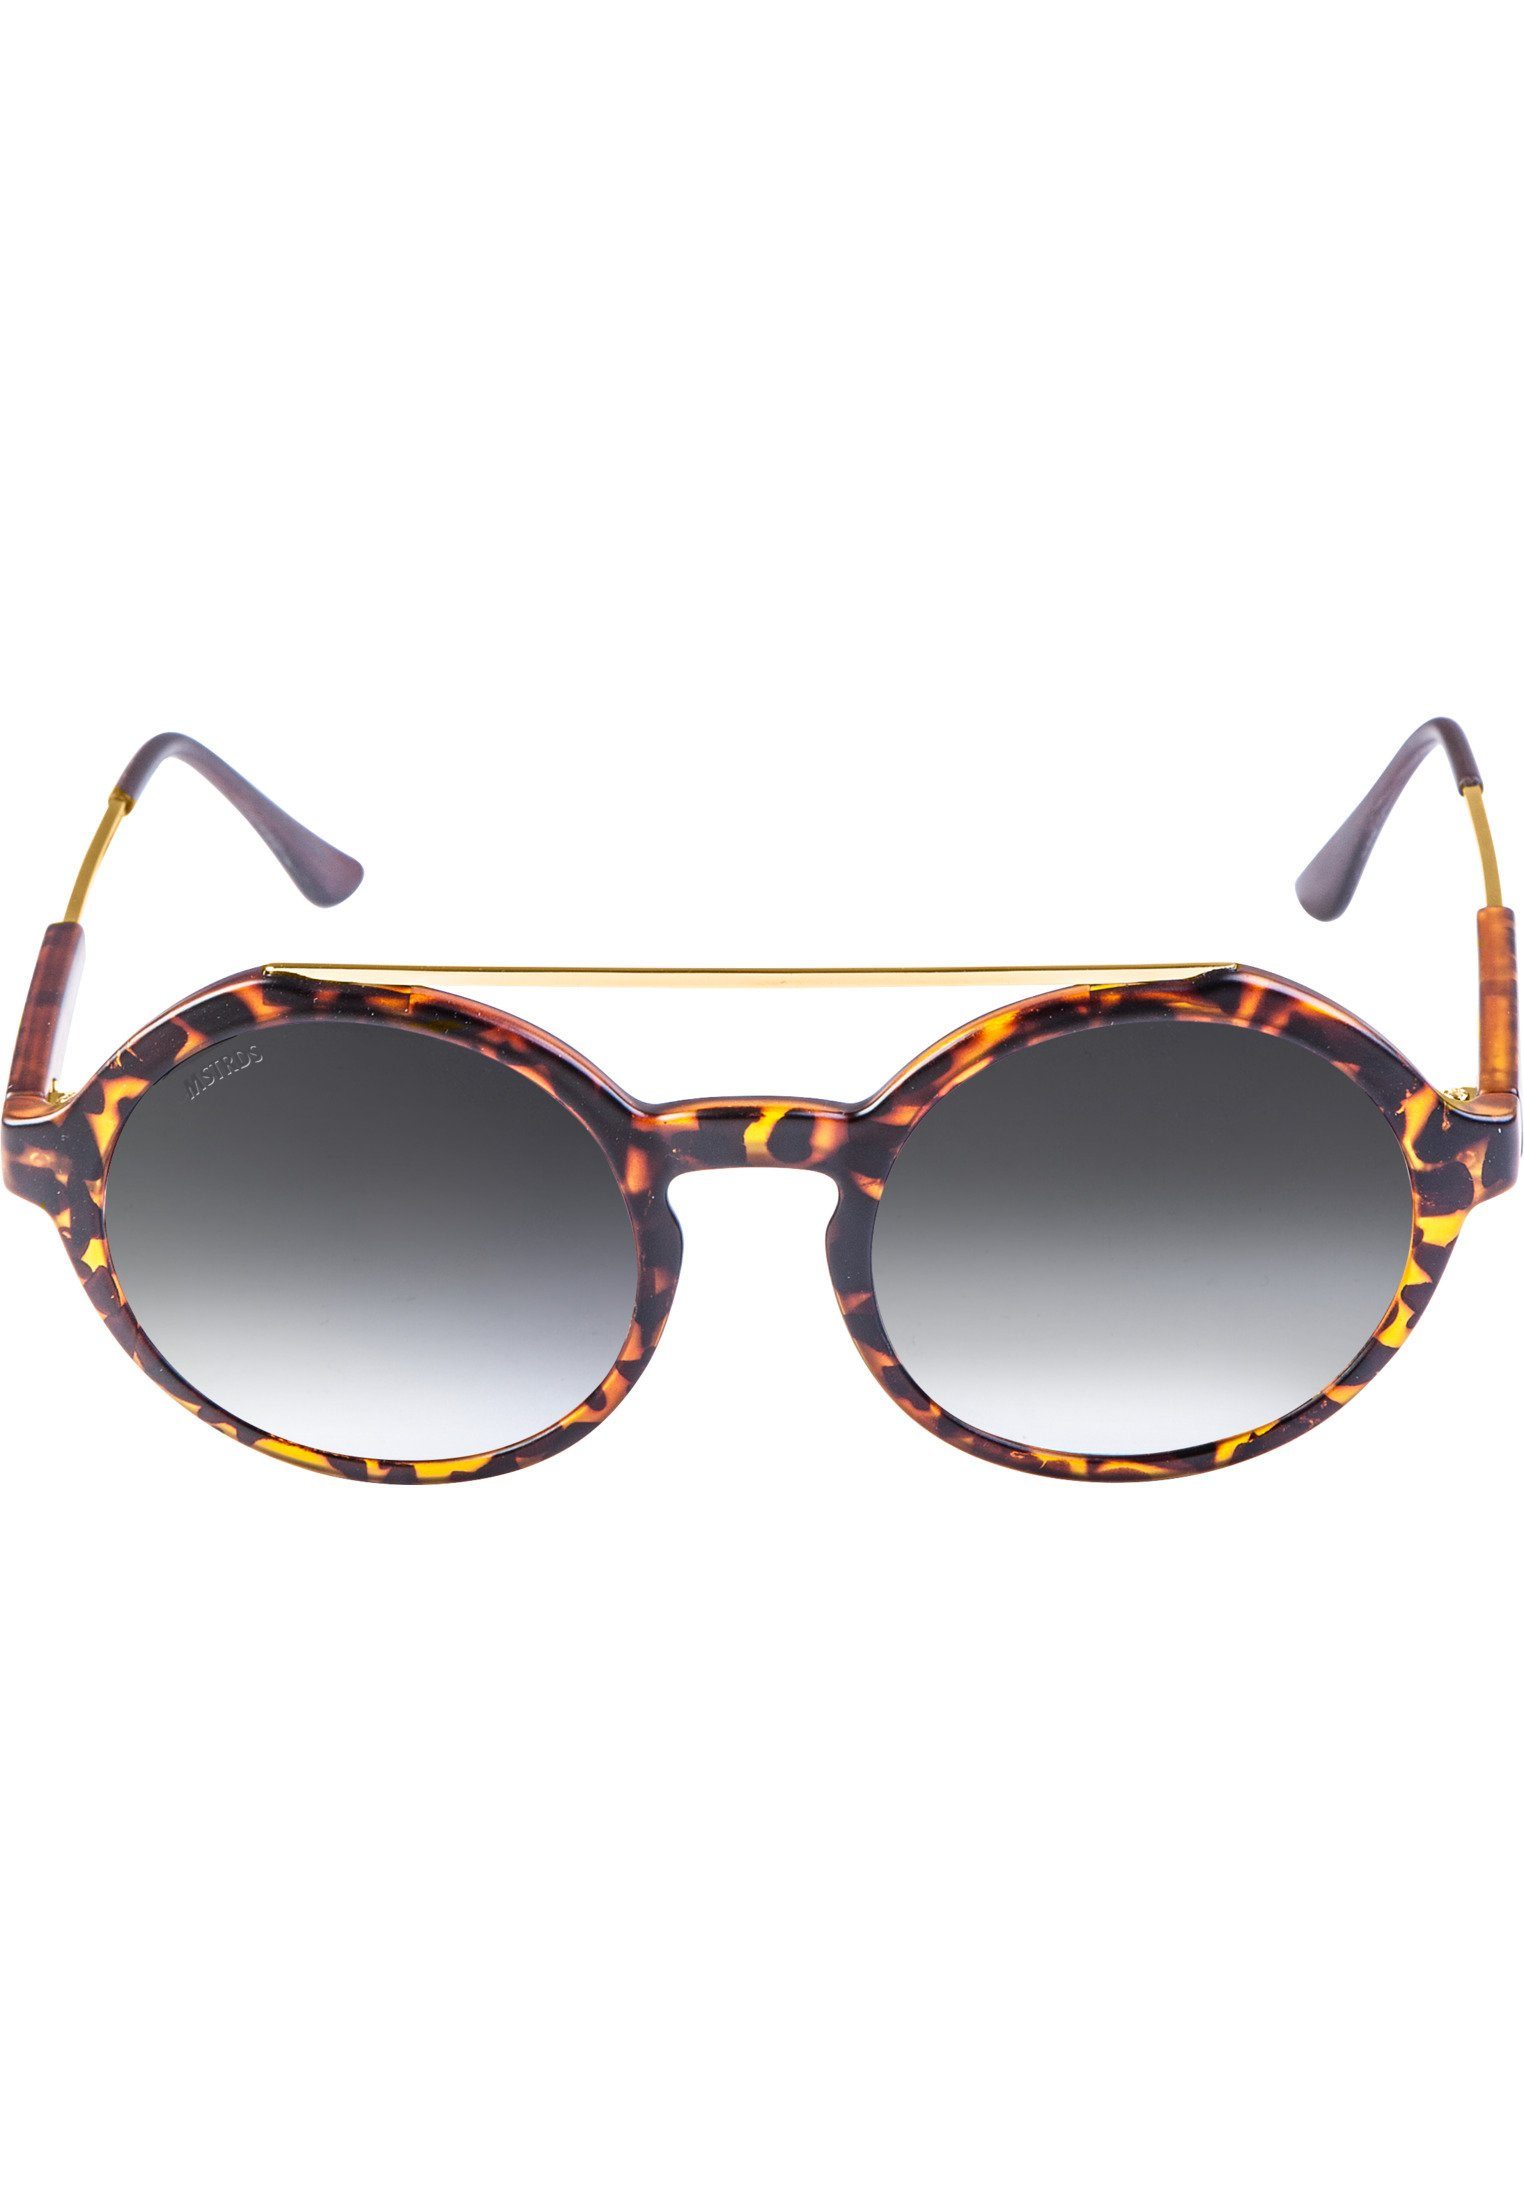 MSTRDS Sonnenbrille Space havanna/grey Accessoires Retro Sunglasses